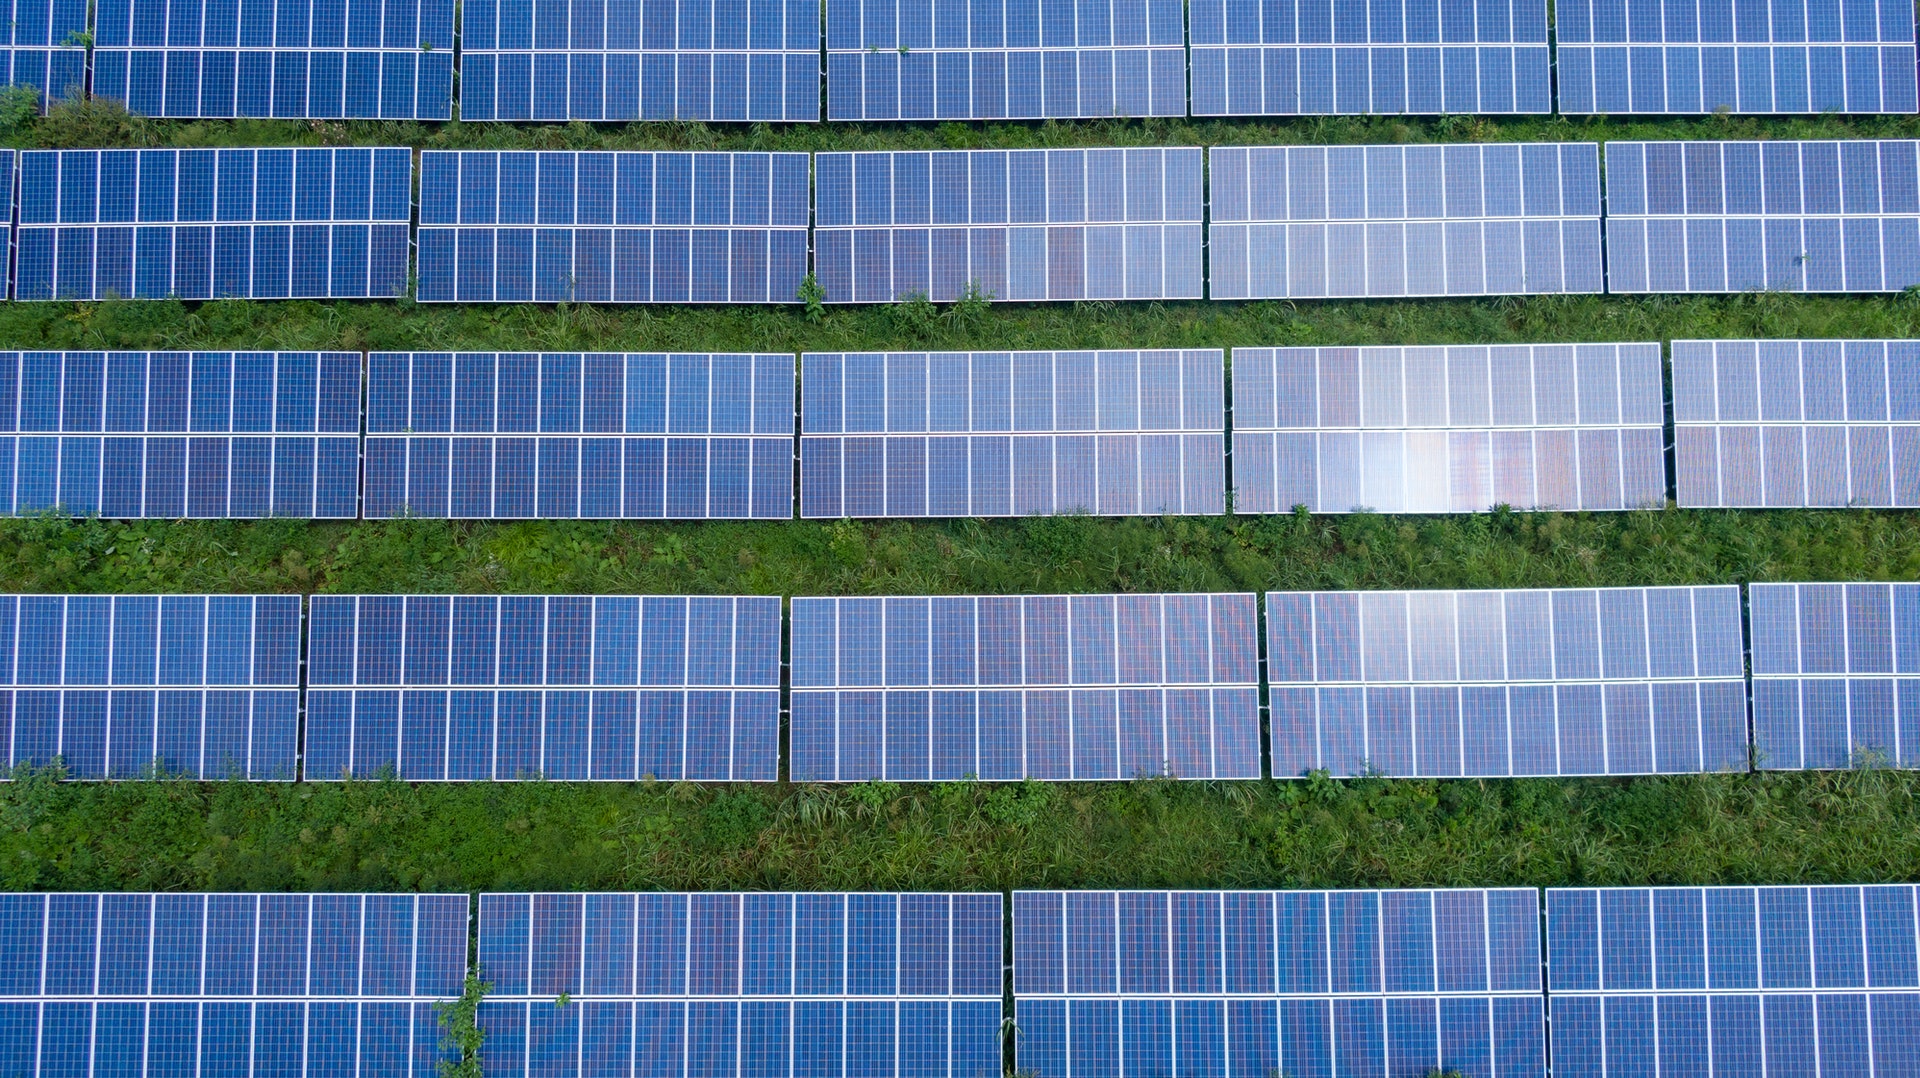 Solaranlagen draussen grüne wiesen mehrfach angereiht